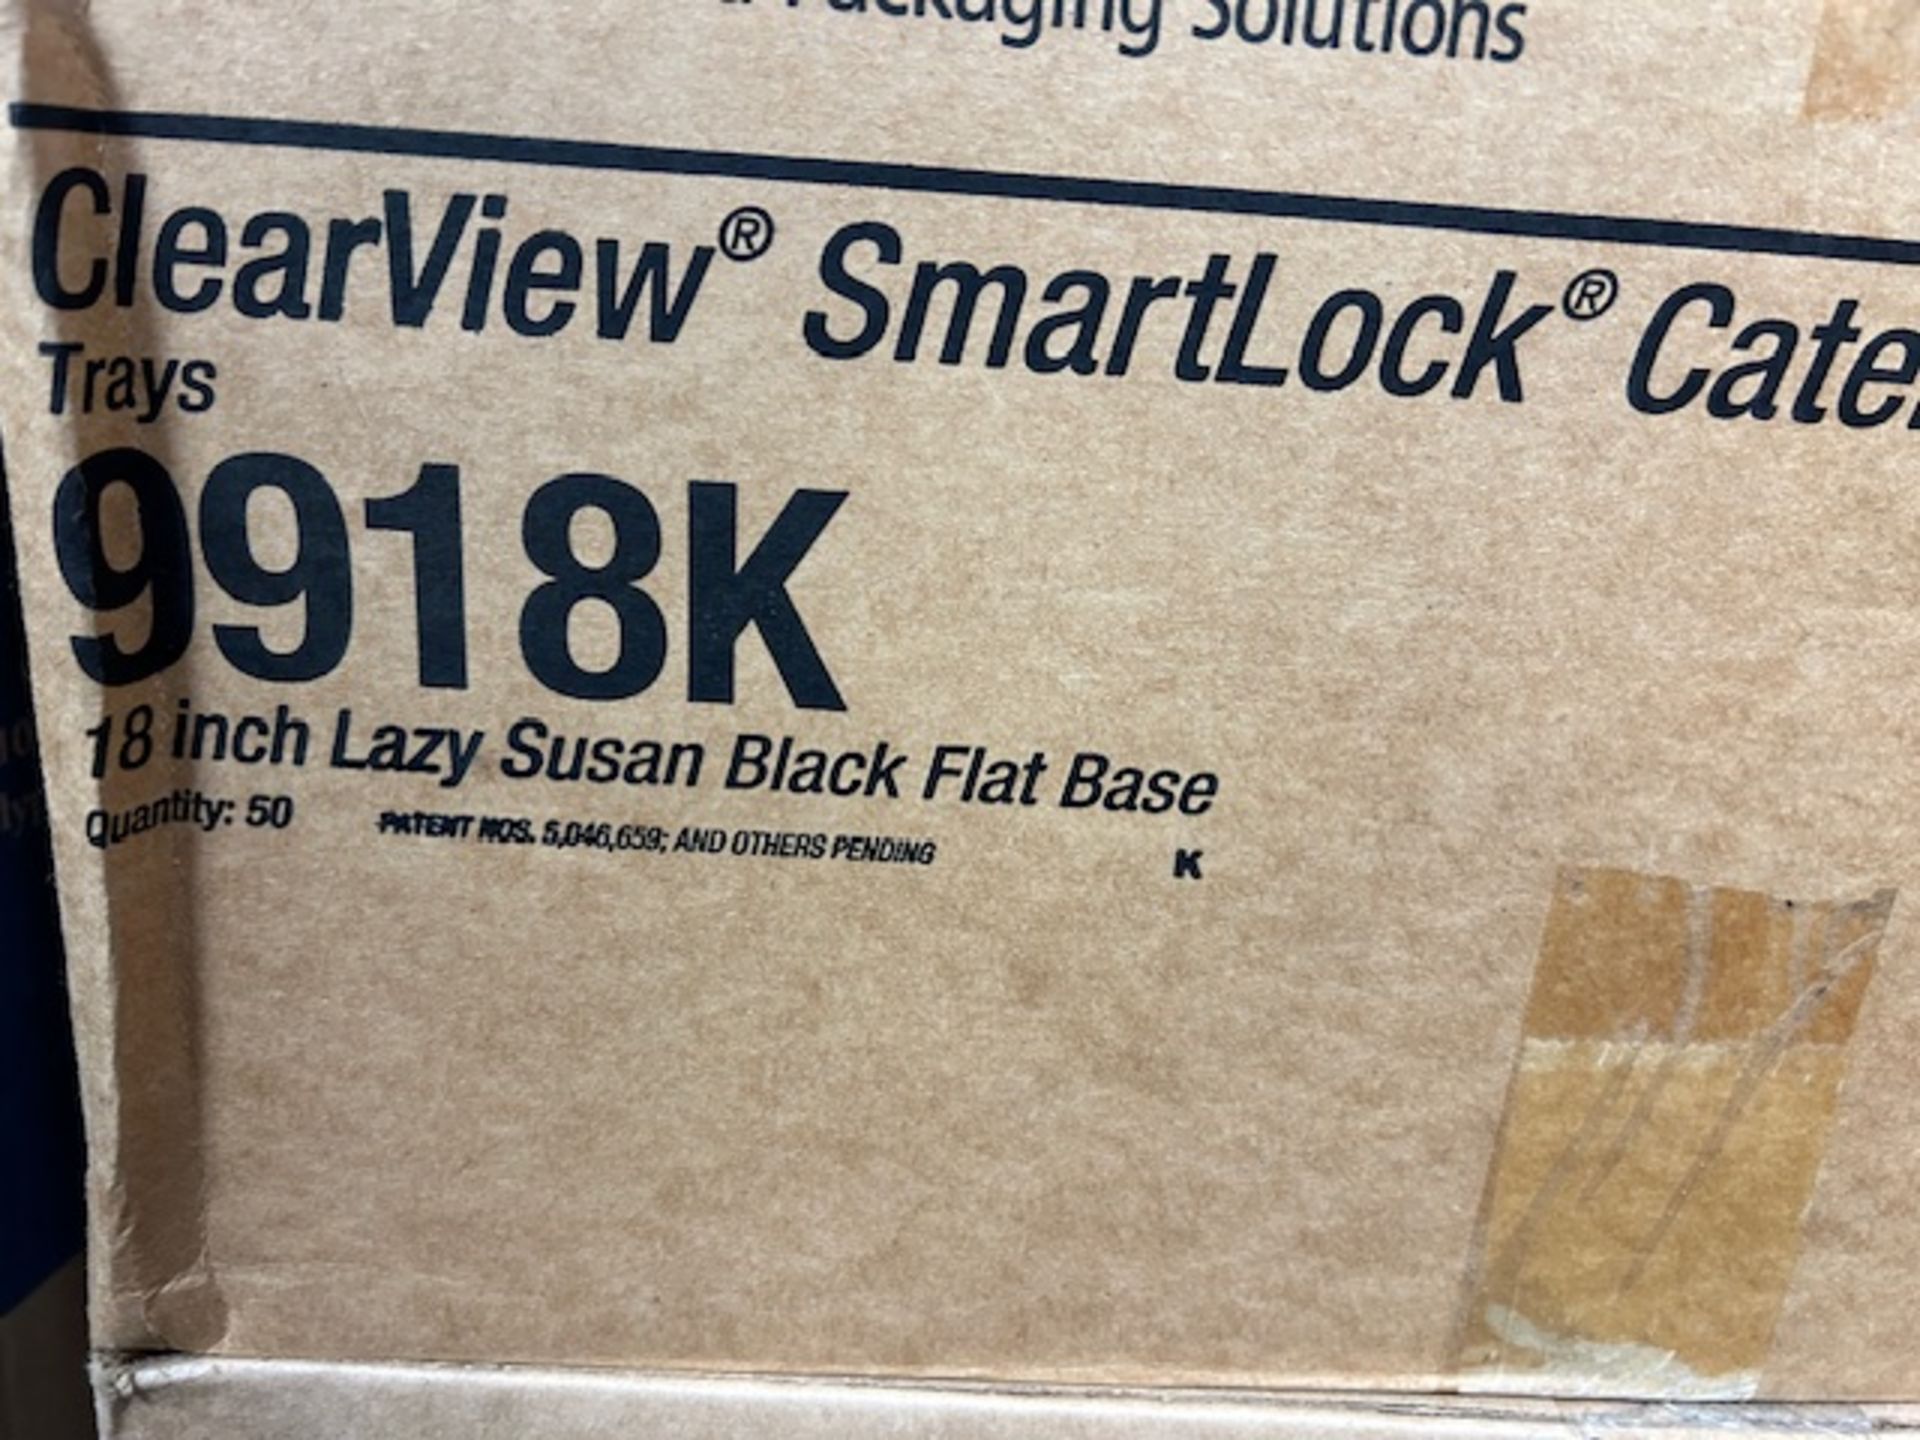 (10) Cases - Pactiv #9918K 18" Black Plastic Lazy Susan Platter (Pack 50) - Image 3 of 4